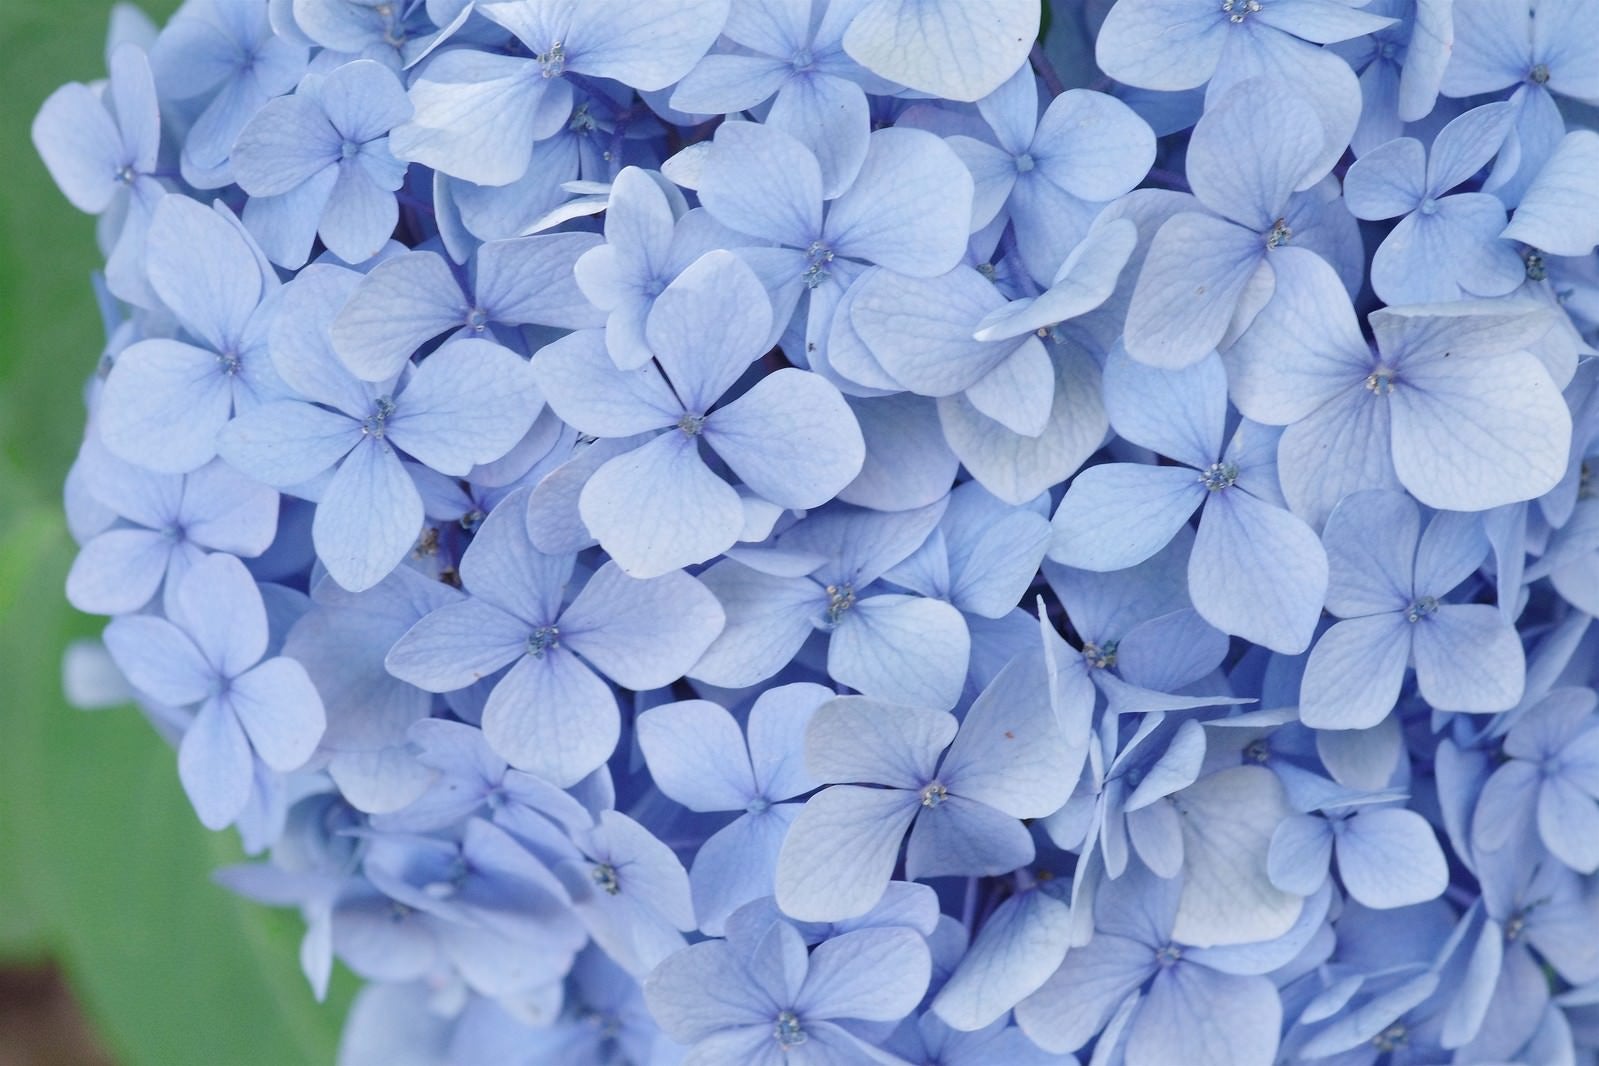 「爽やかな青色紫陽花」の写真